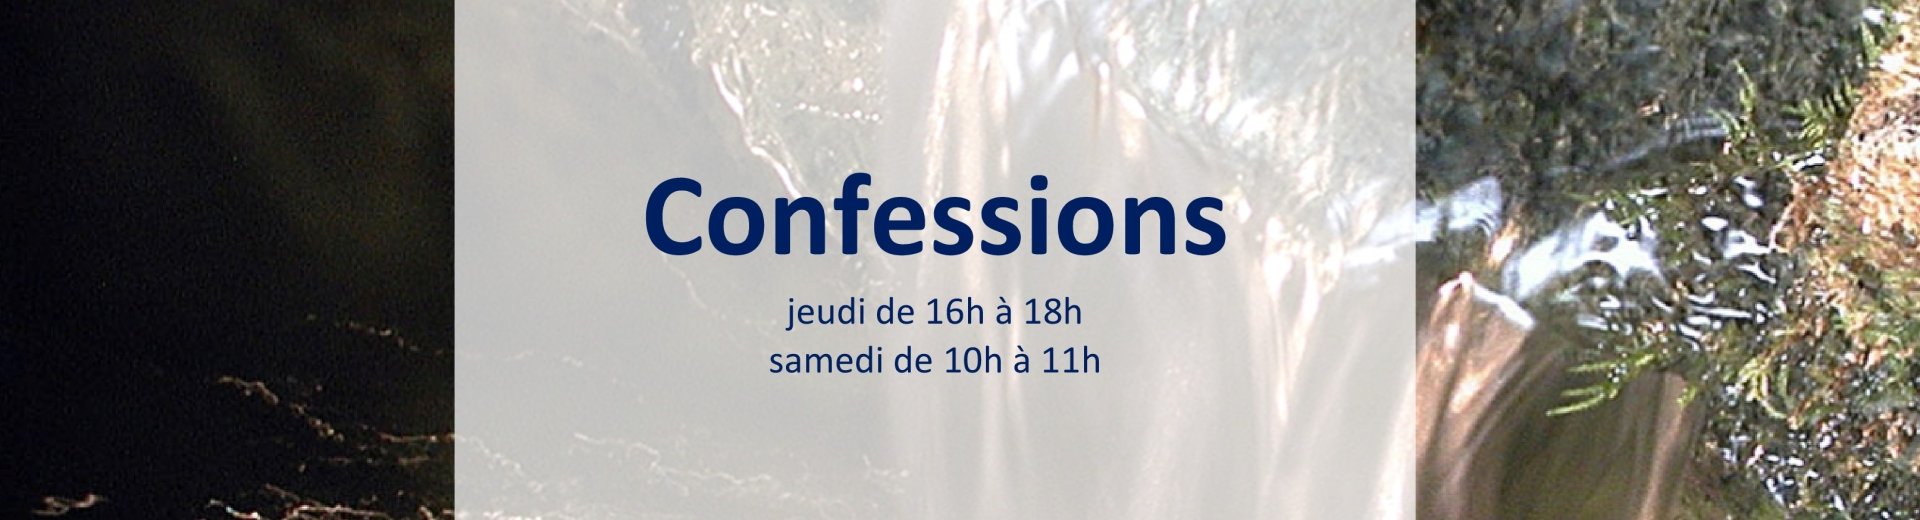 confessions-660ea4a803086119611365.jpg